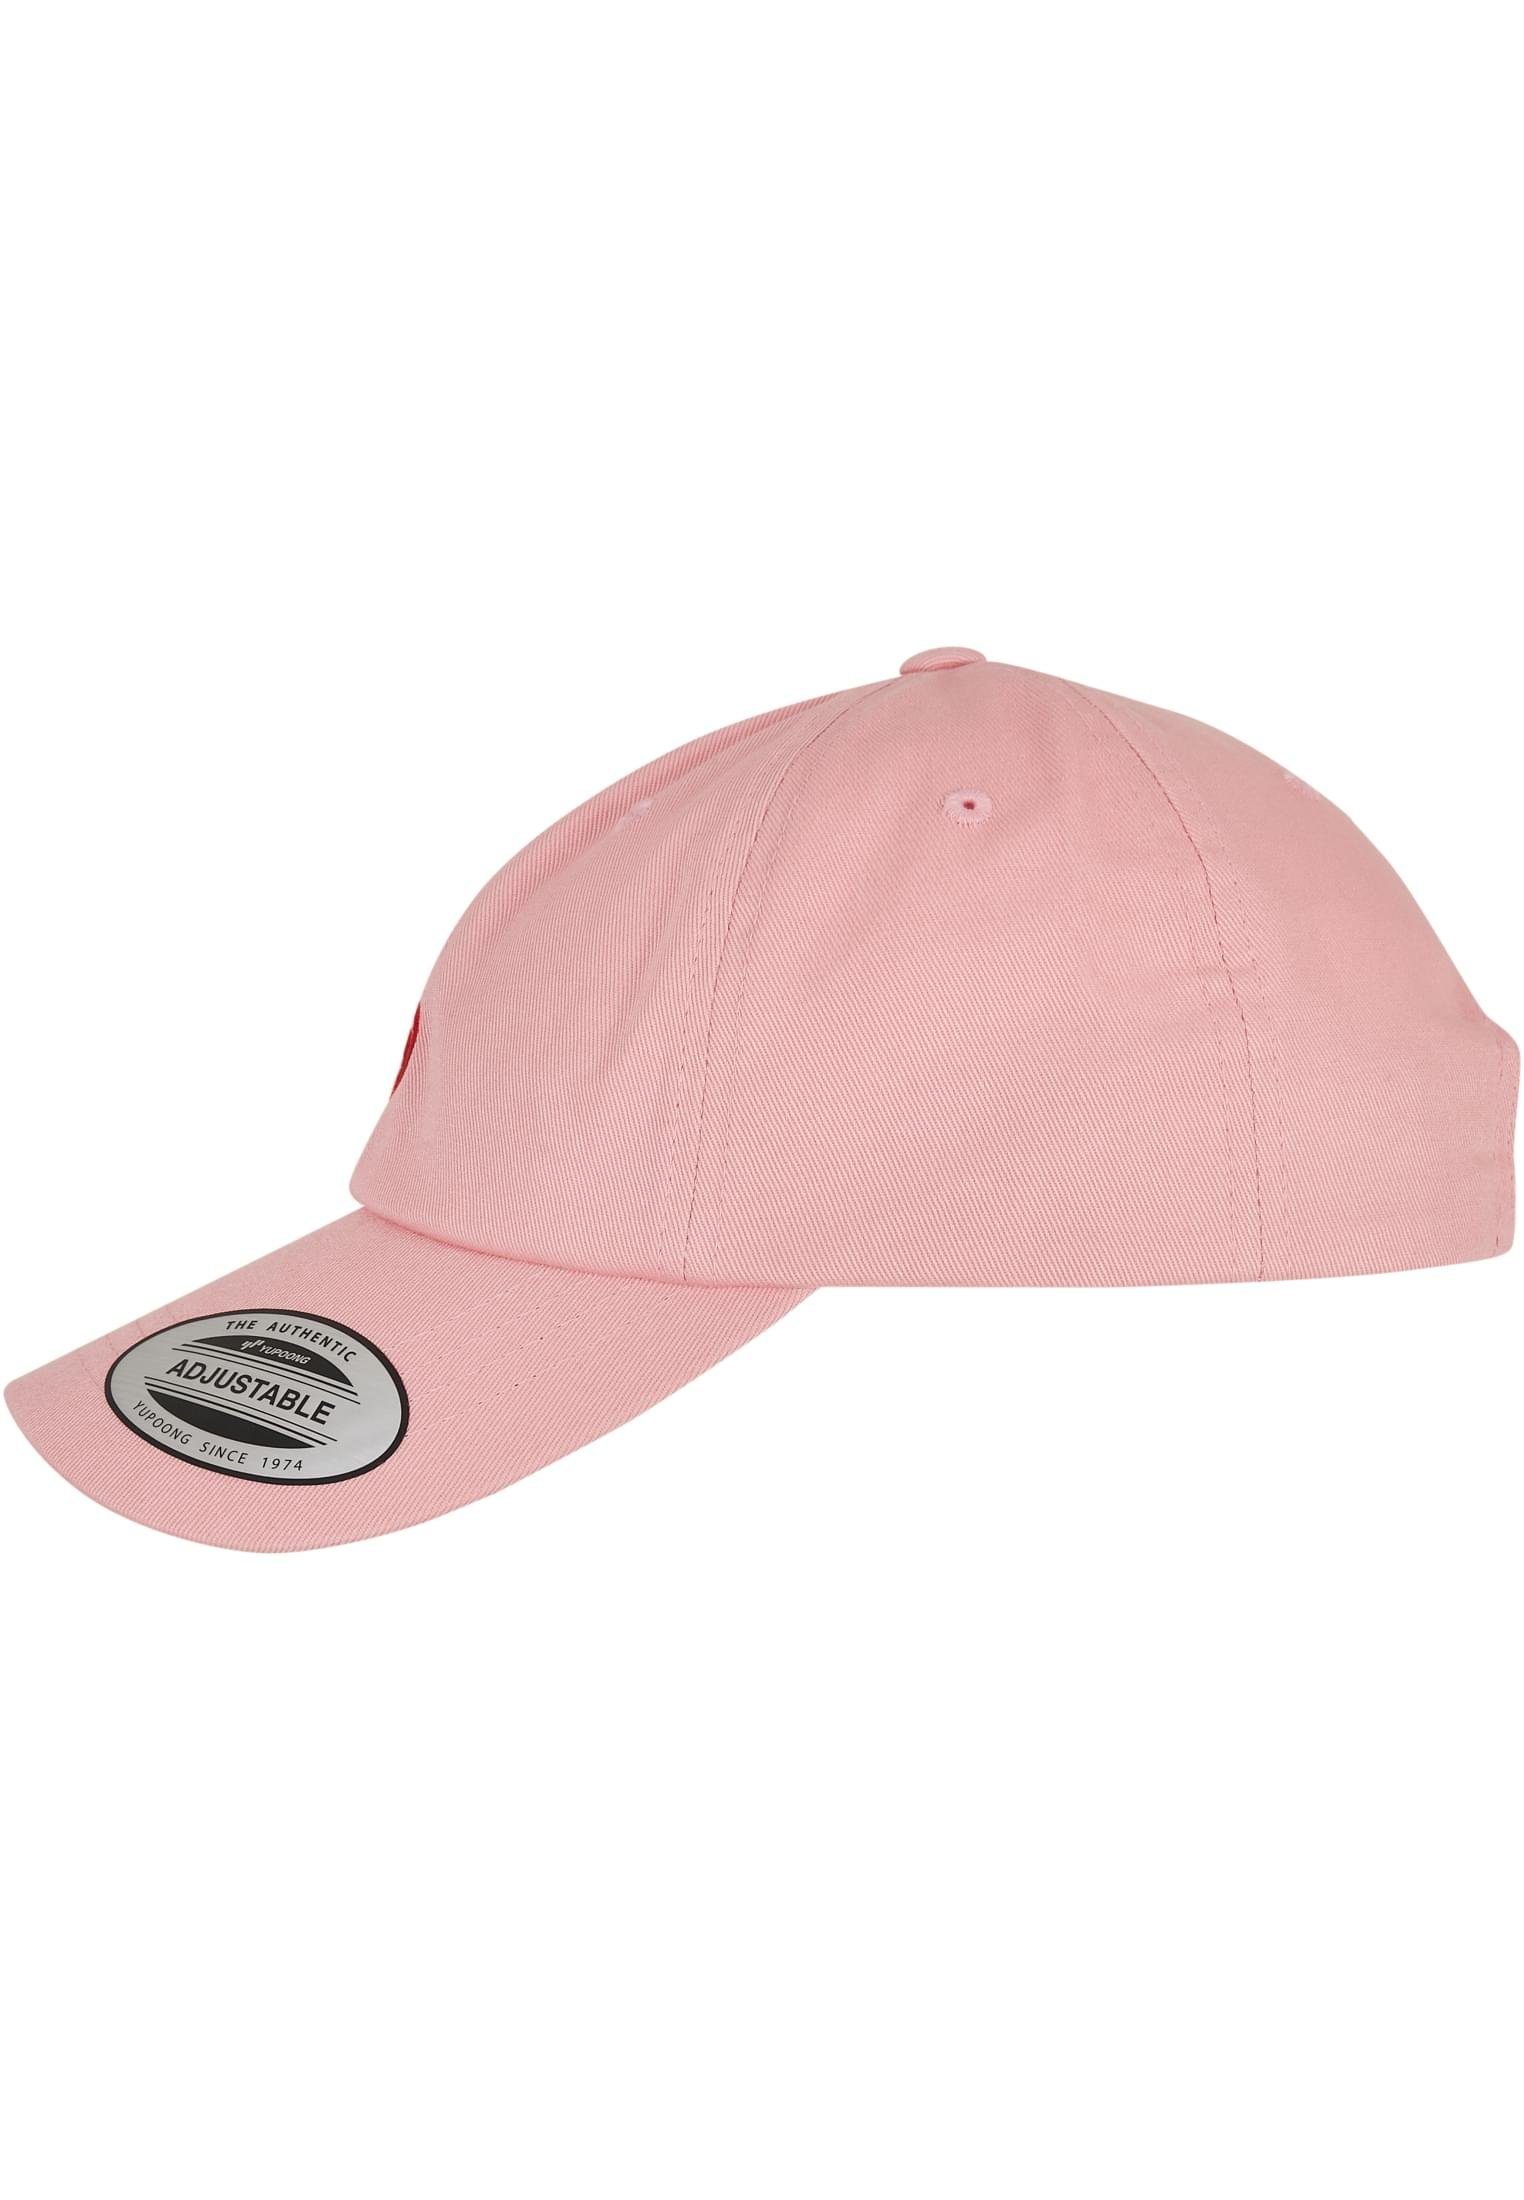 MisterTee Pink Flex Cap Accessoires Profile Low Cap Letter